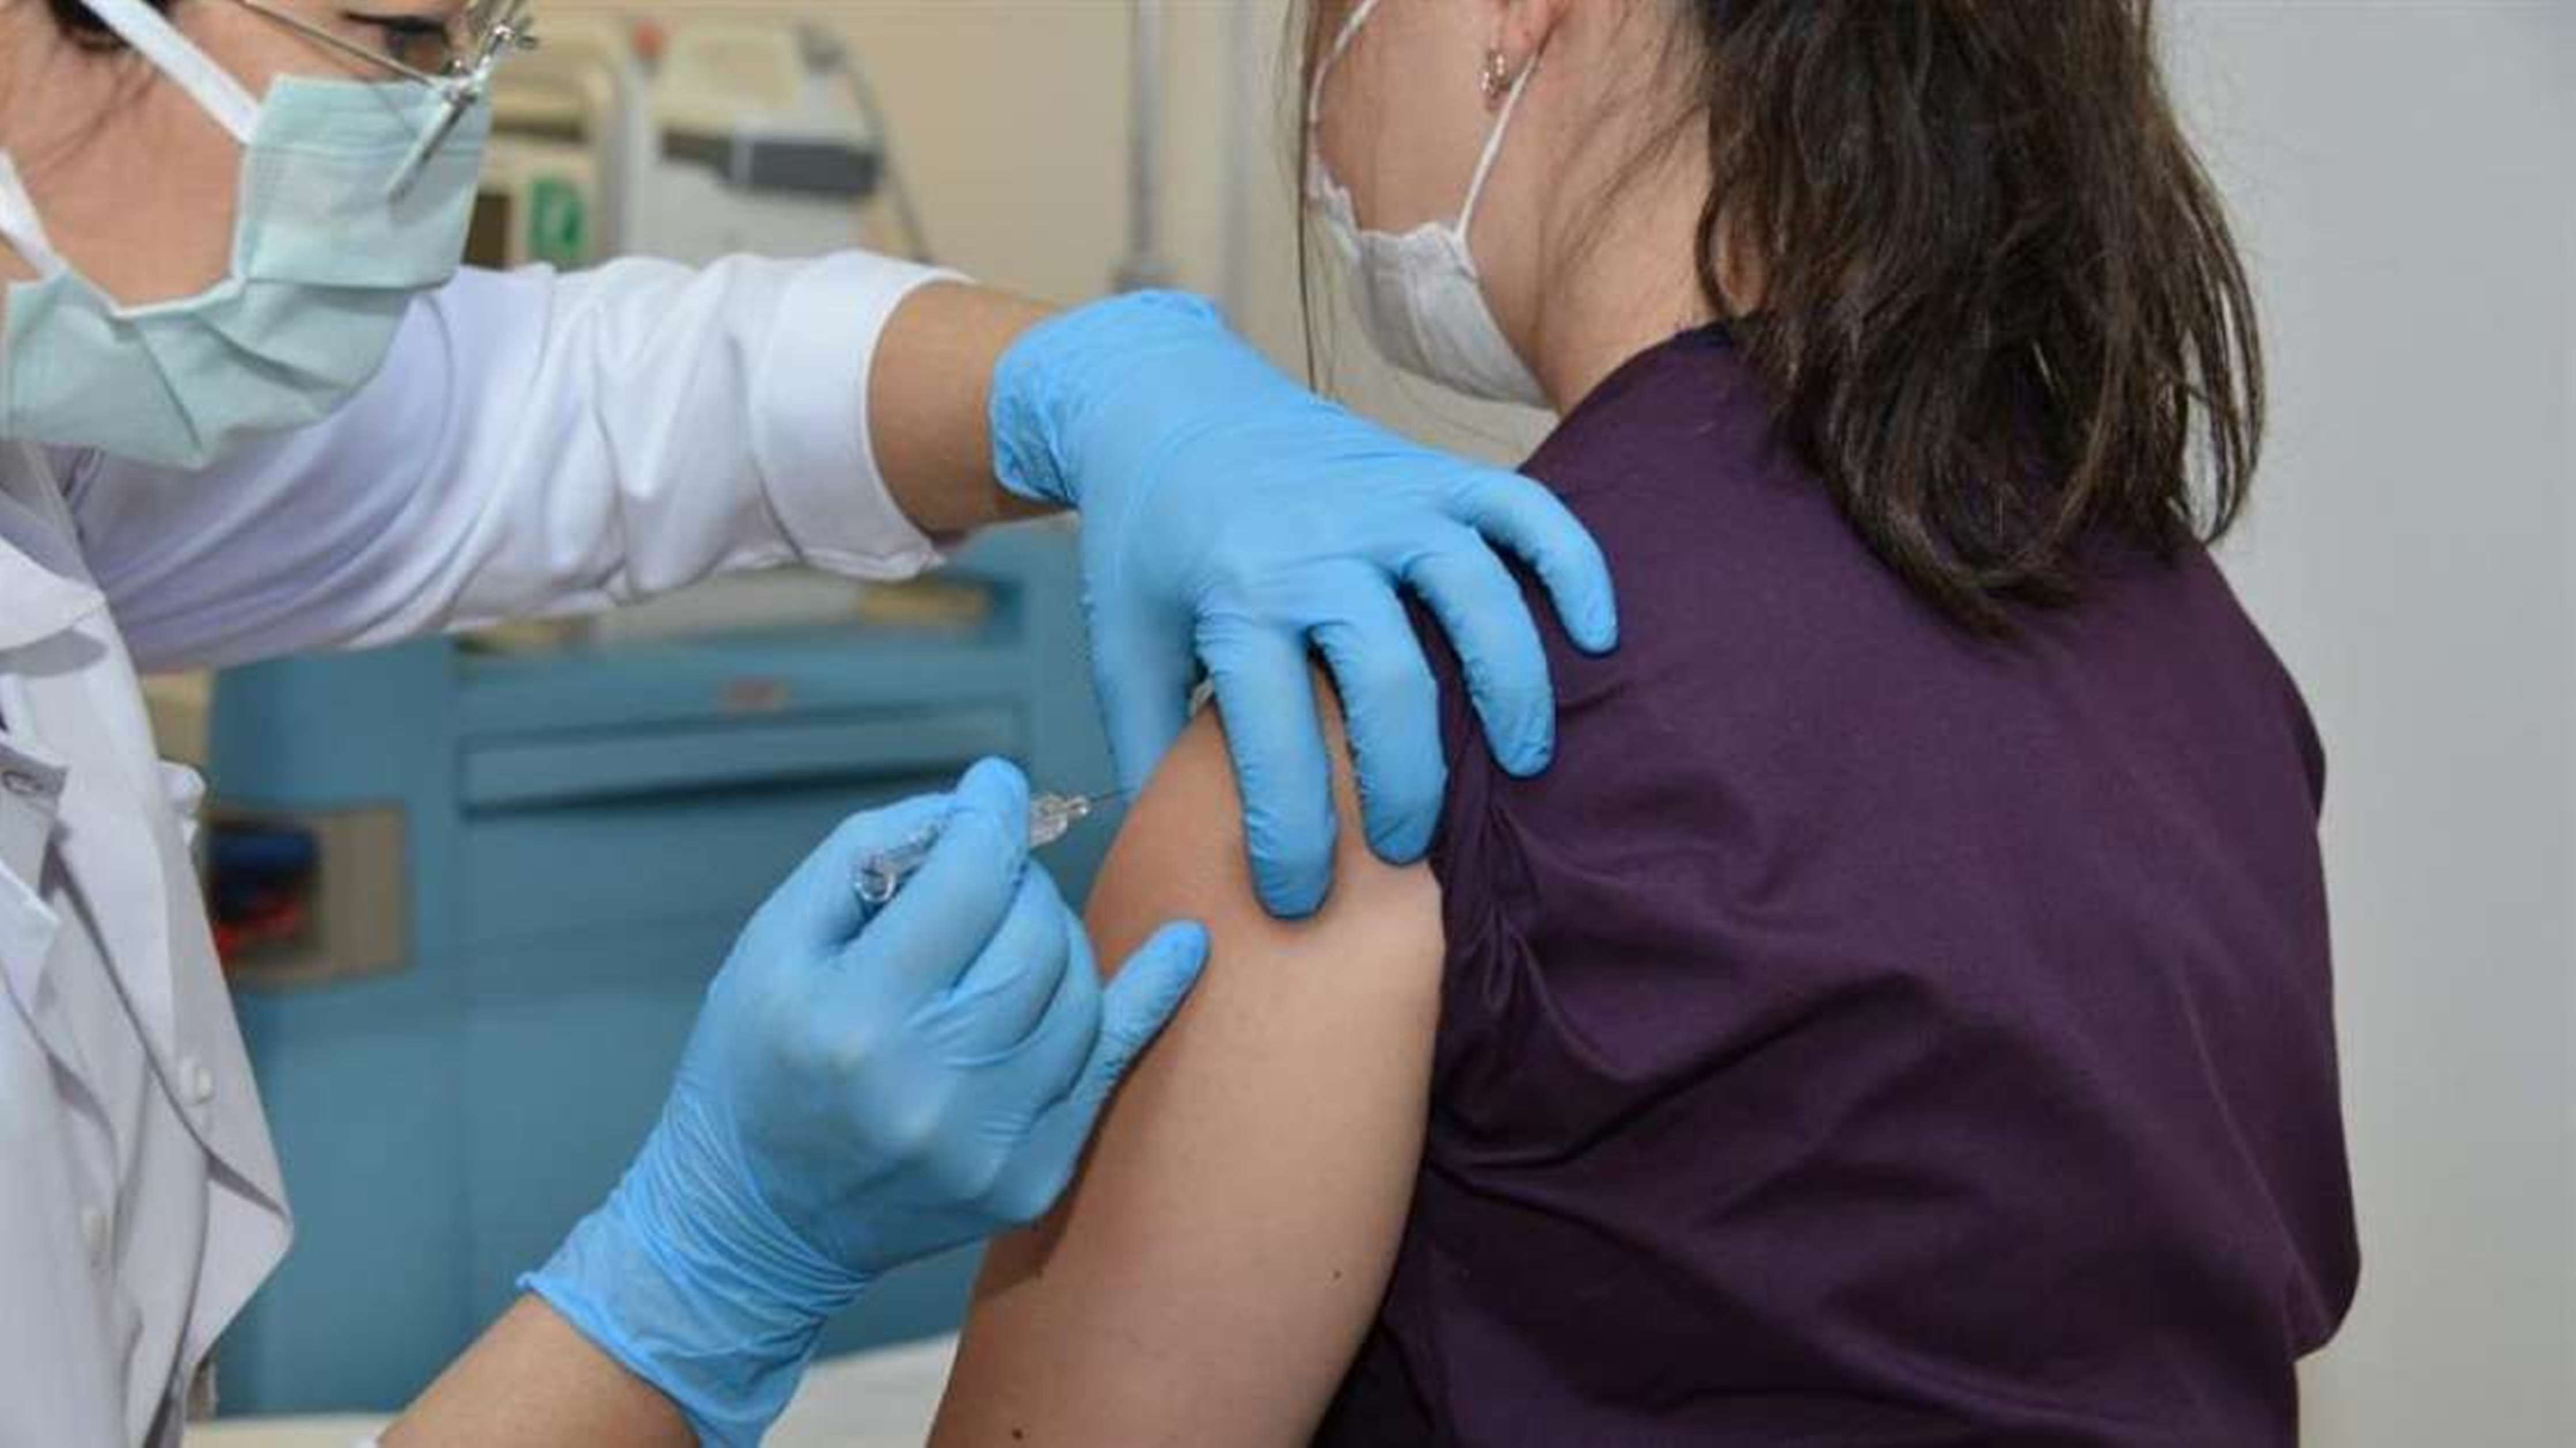  Las personas son reacias a vacunarse contra la COVID-19, en cuanto se pueda